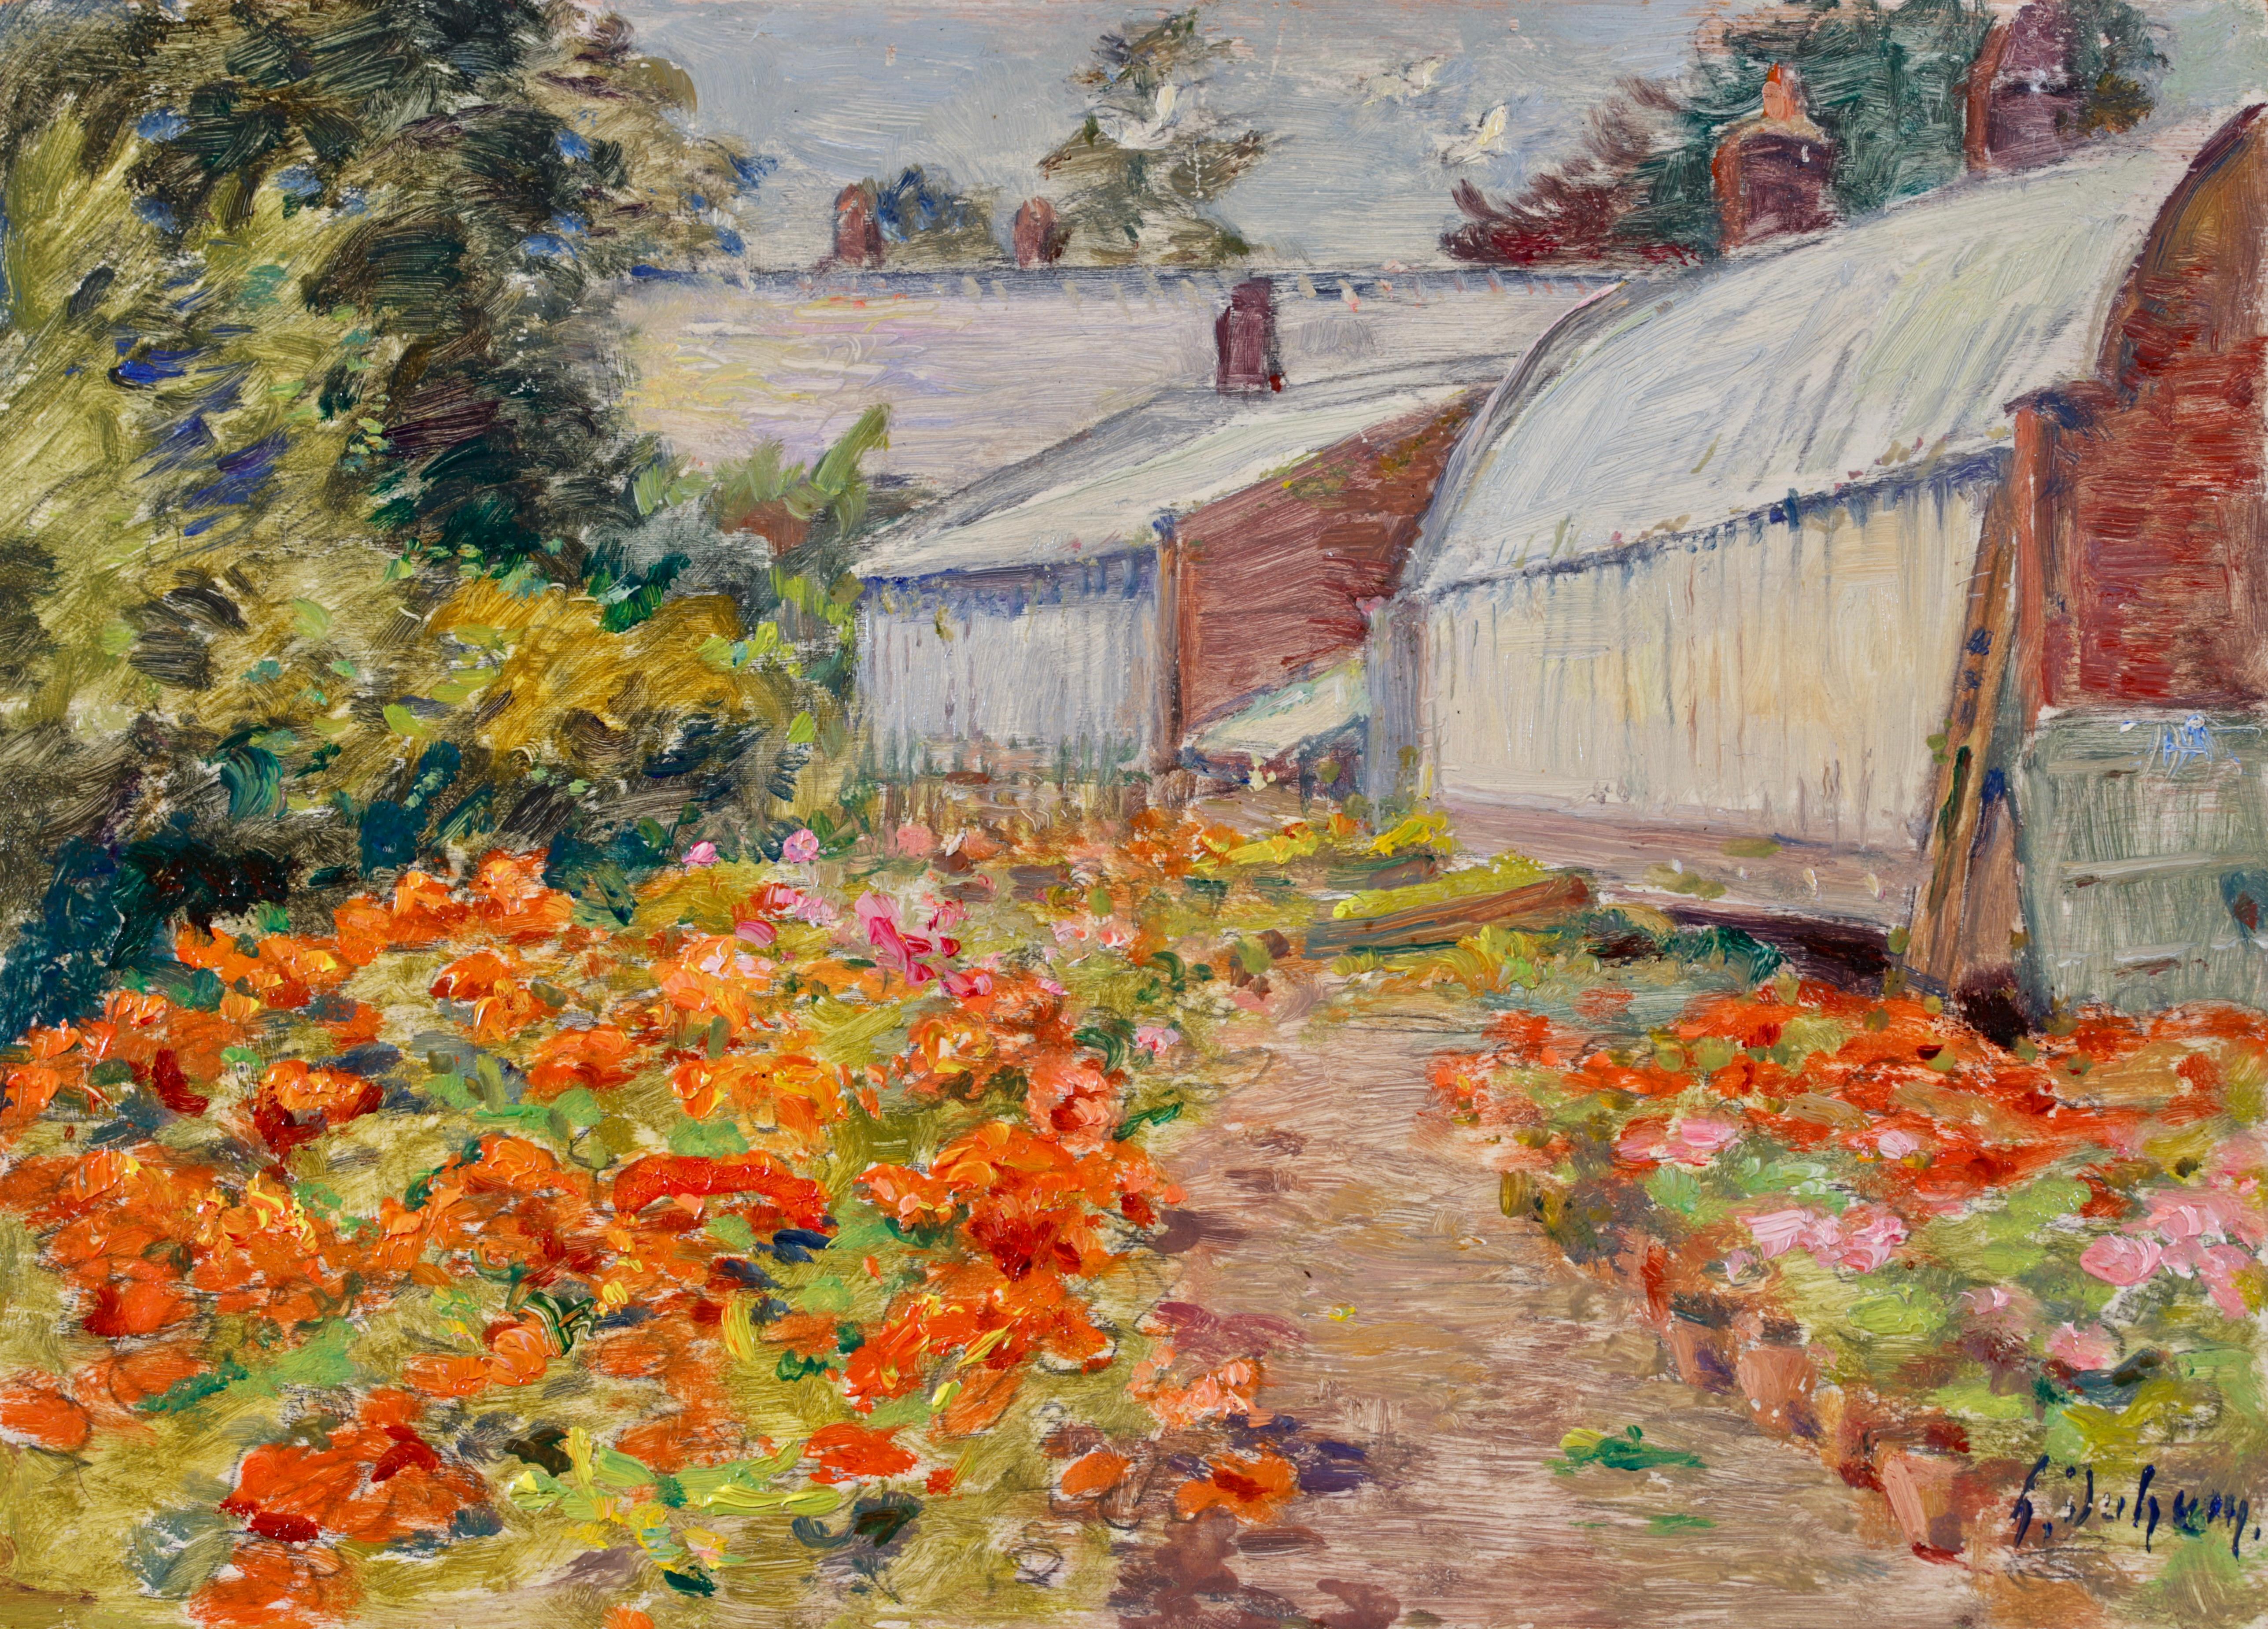 Signiert und datiert Landschaft Öl auf Platte von Französisch impressionistischen Maler Henri Duhem. Das Gemälde zeigt eine Ansicht des Blumengartens des Künstlers, der mit orangefarbenen, roten und rosa Blüten gefüllt ist. Ein Weg führt zu den